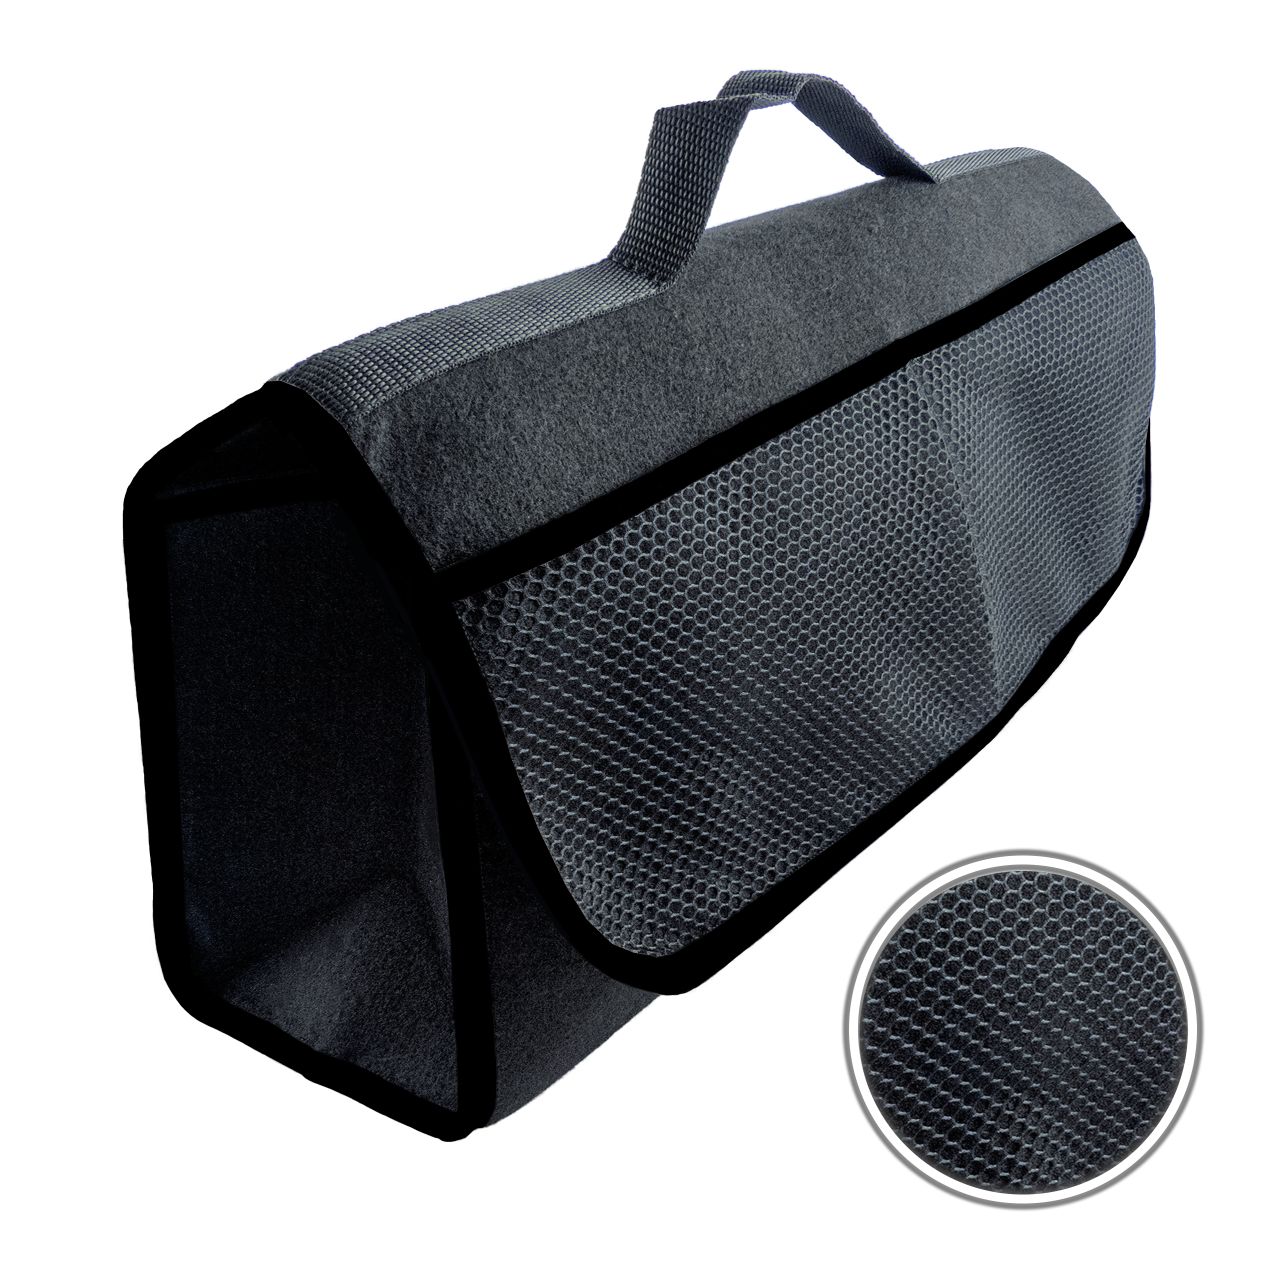 Kofferraumtasche Schwarz mit Klettbefestigung für einen sicheren